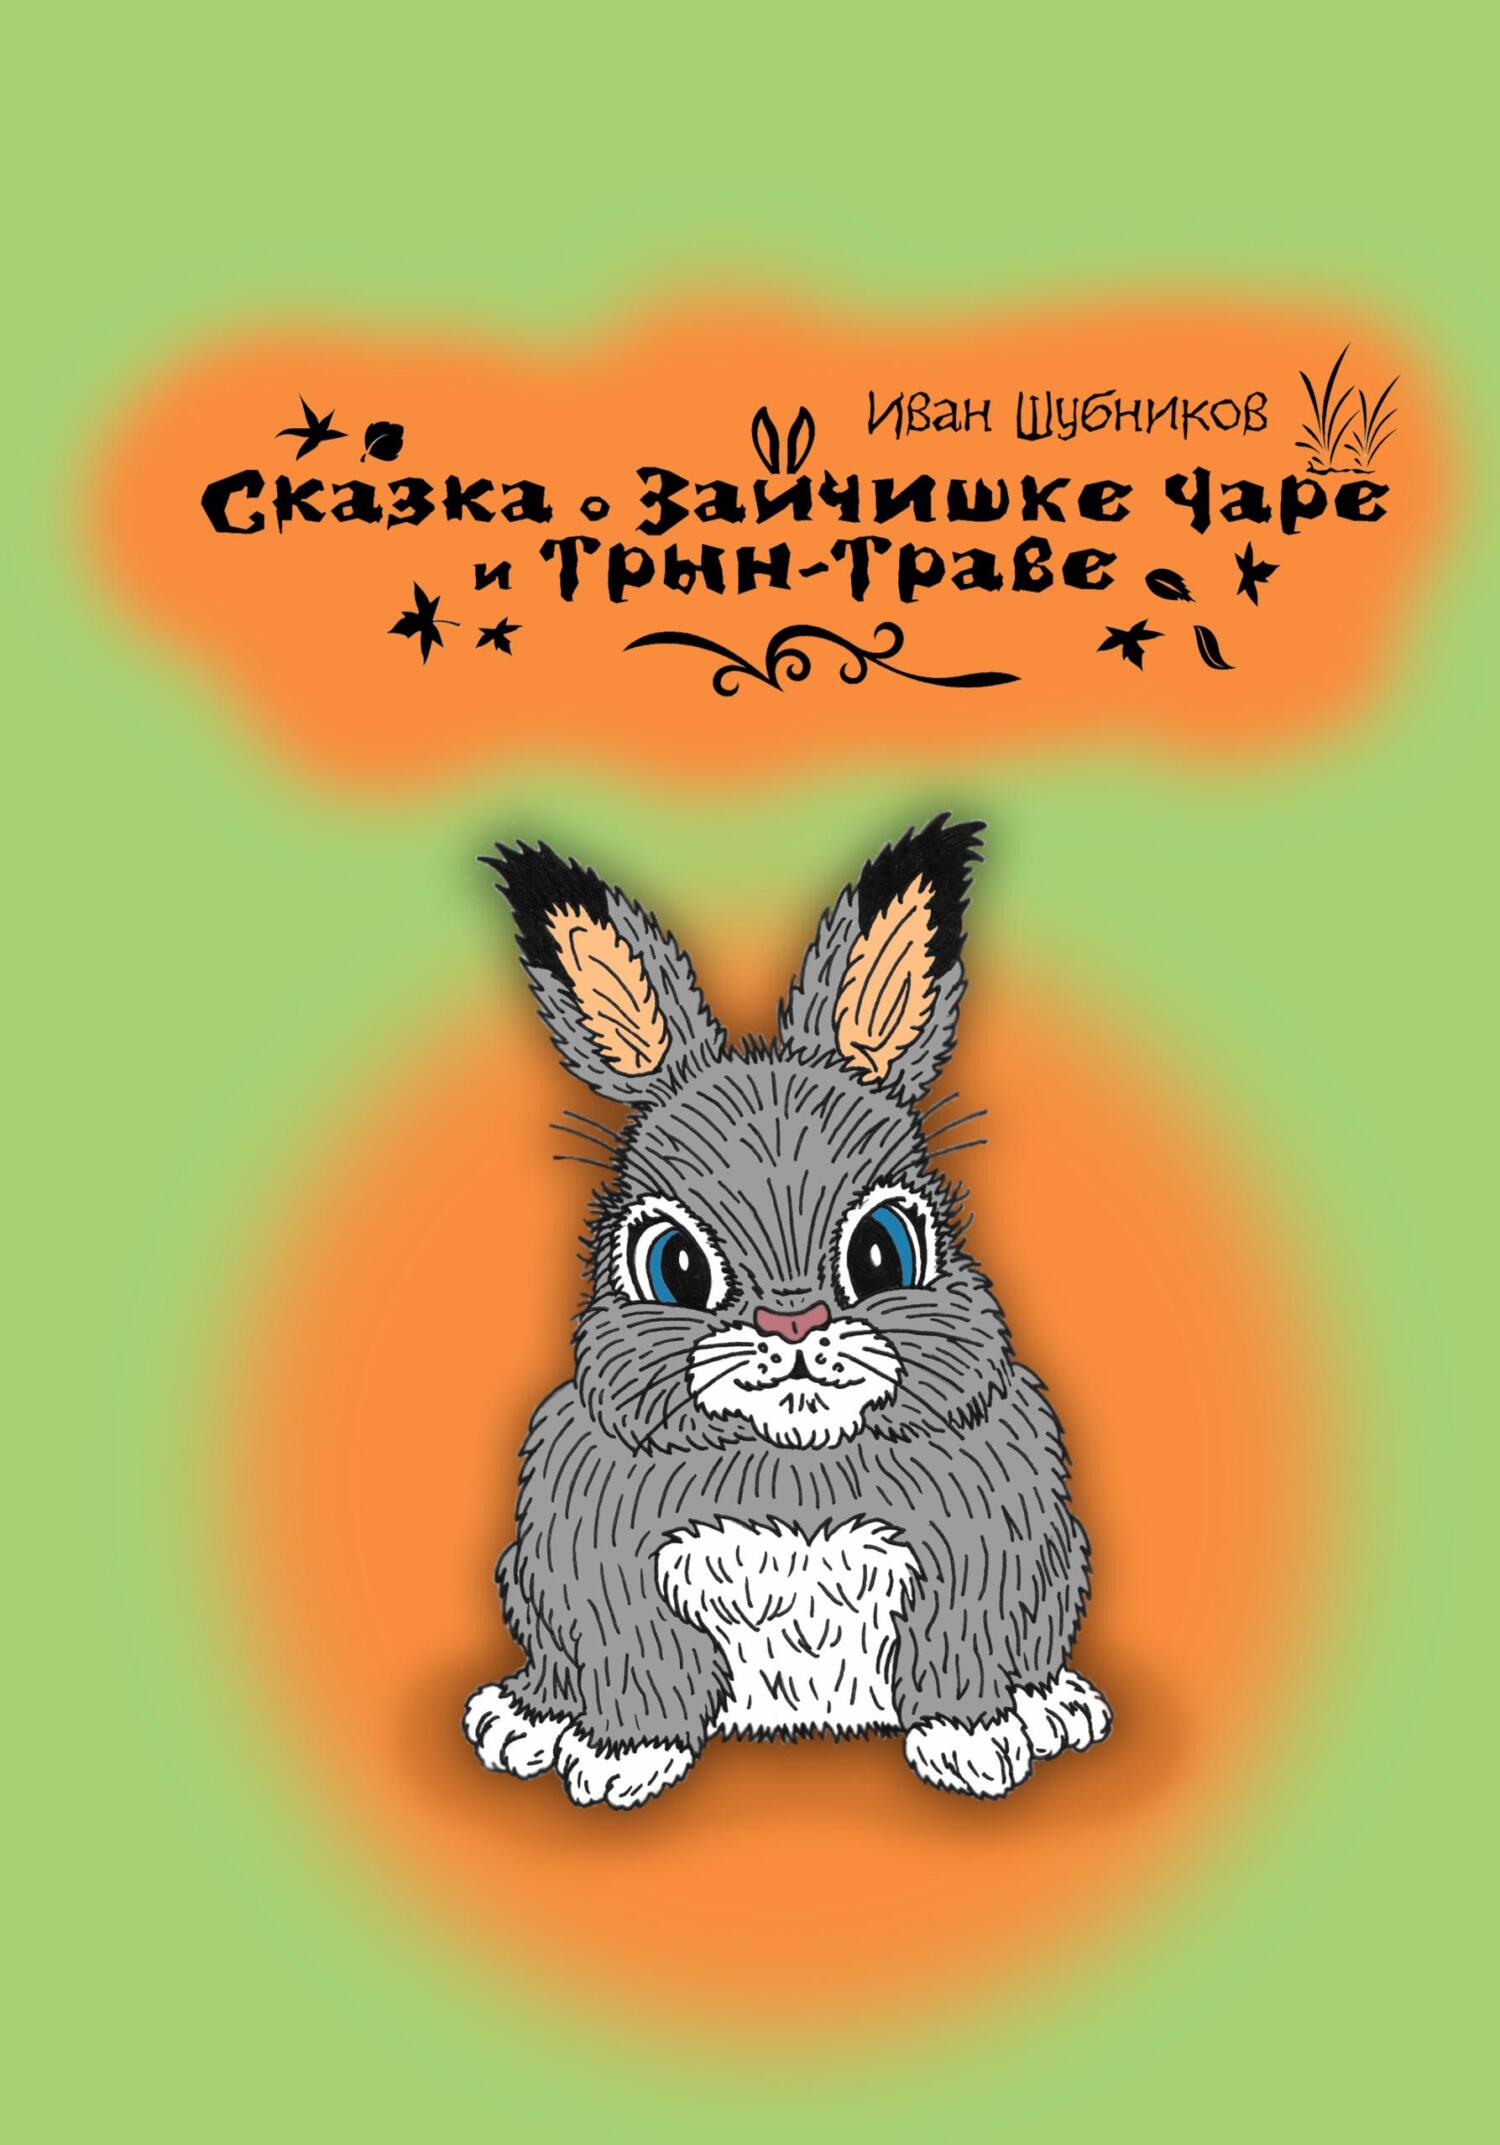 Сказка о зайчишке Чаре и Трын-Траве - Иван Шубников